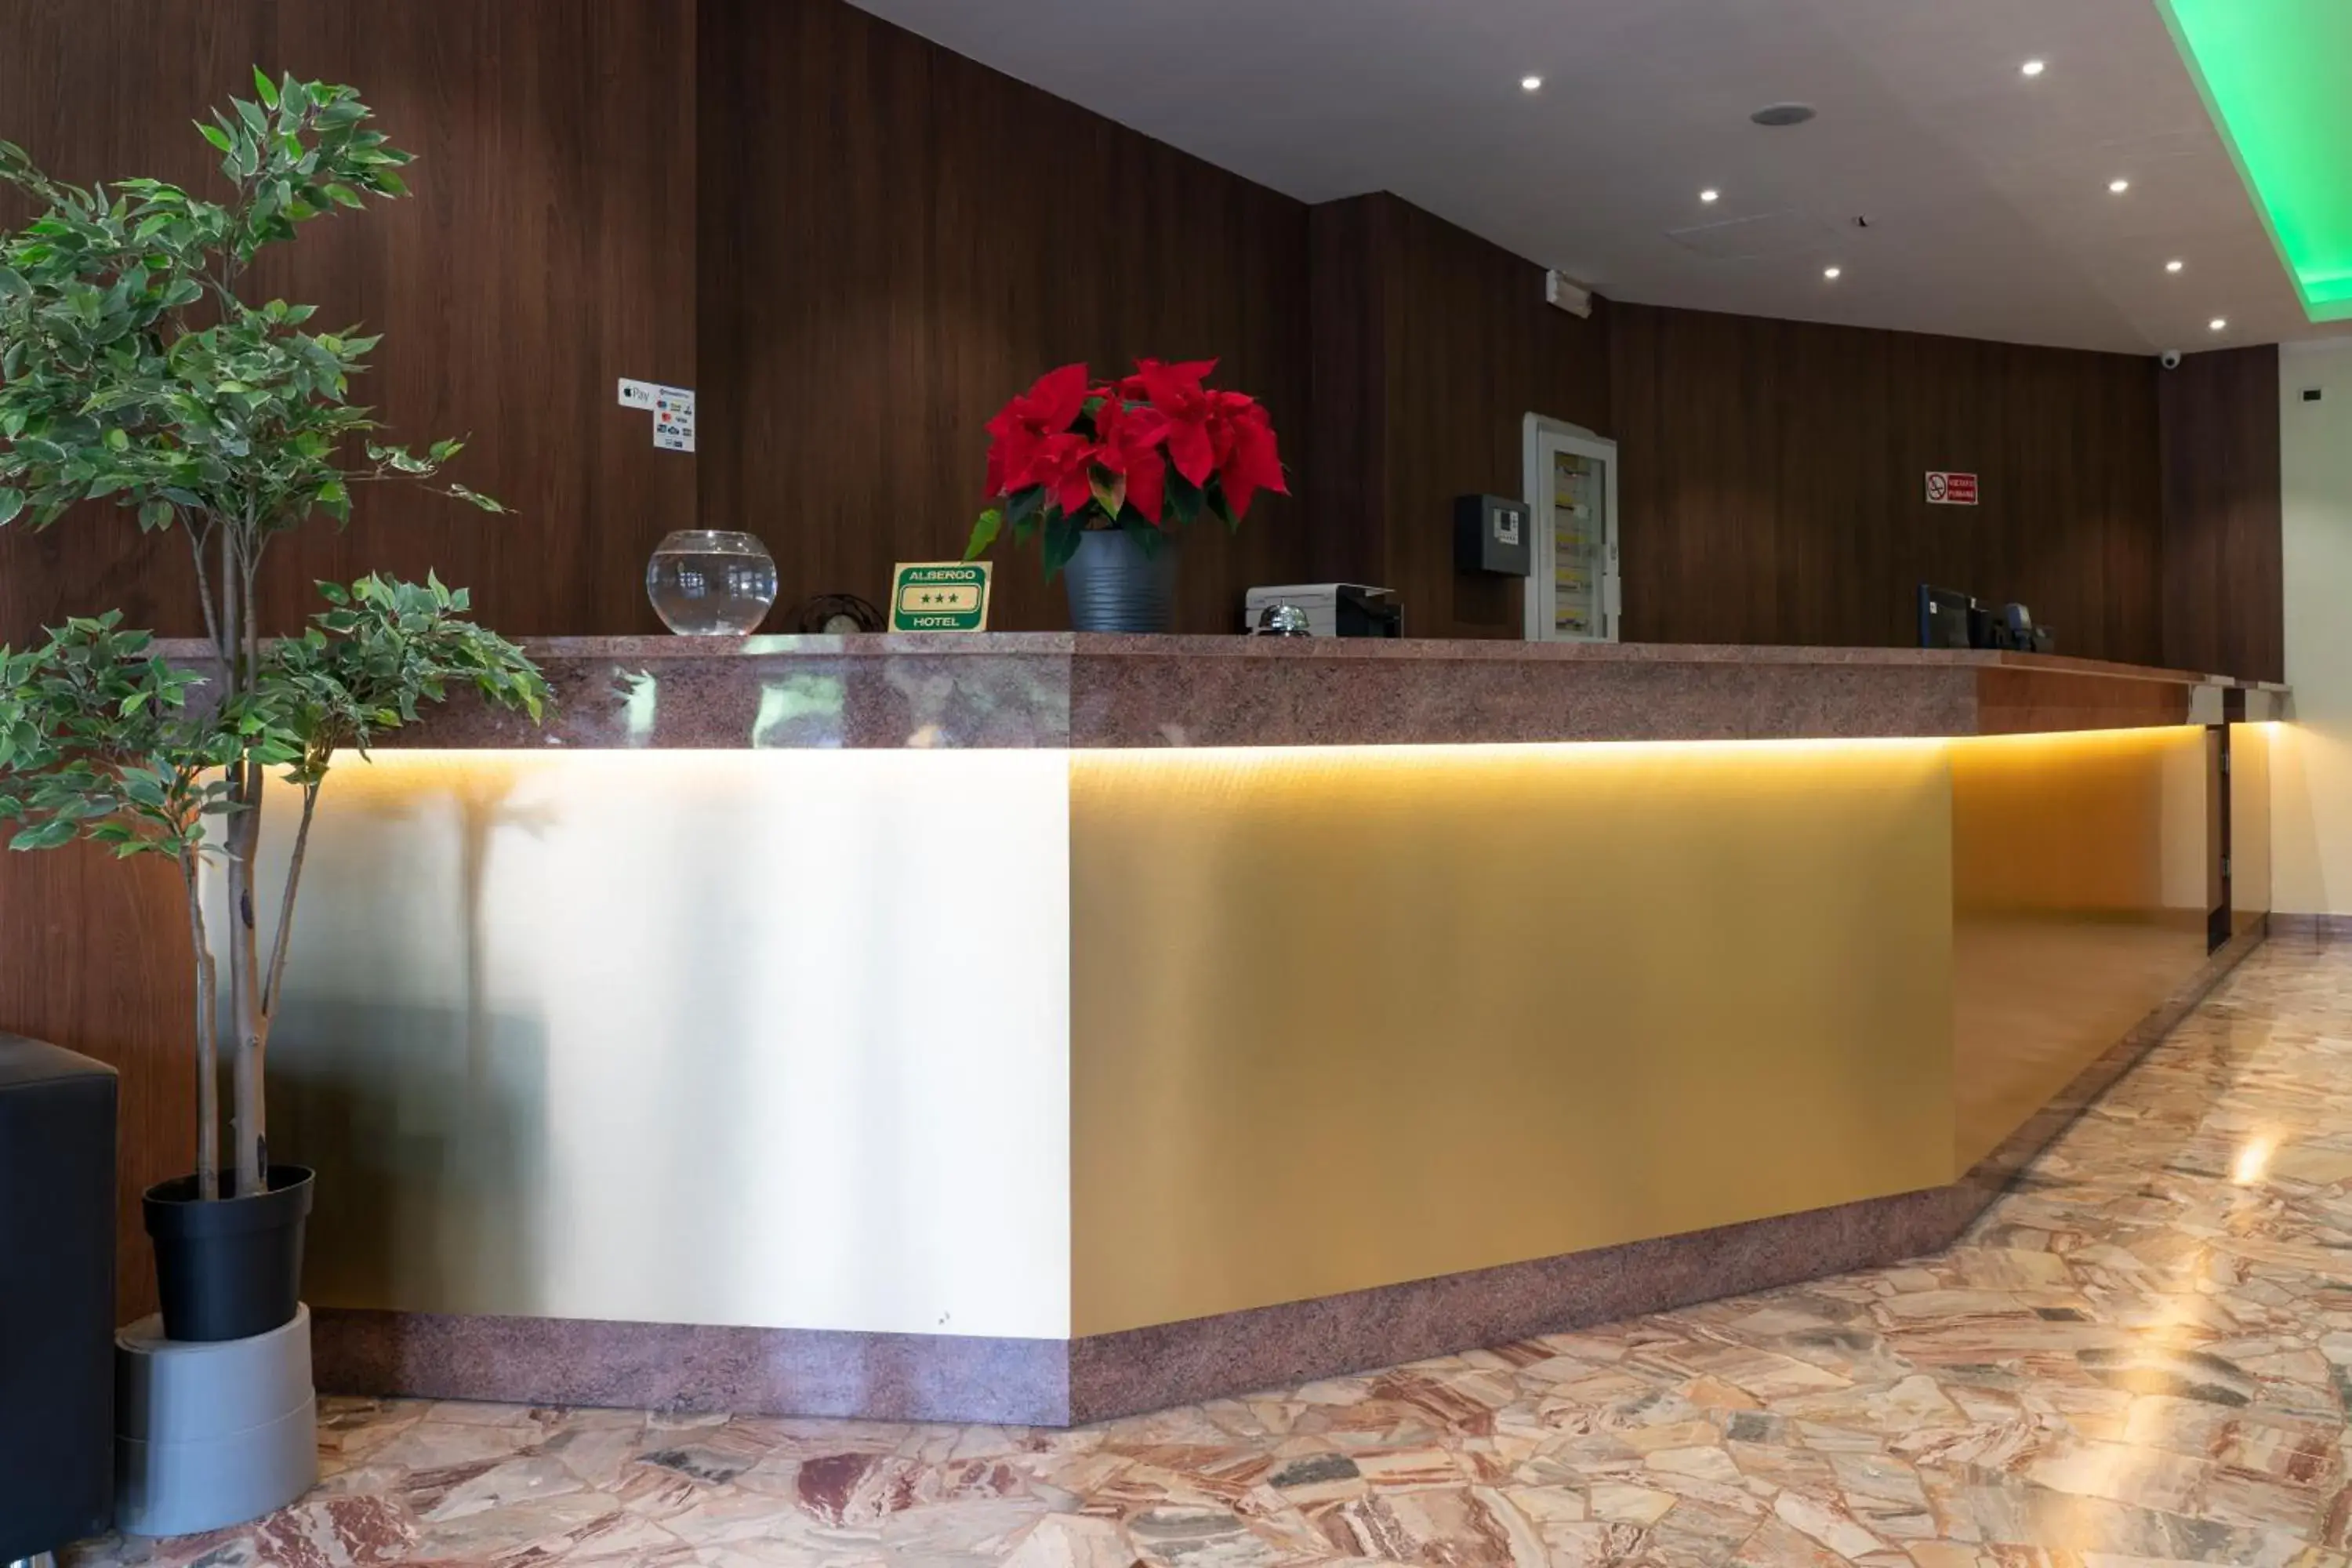 Lobby or reception, Lobby/Reception in H&L Hotel